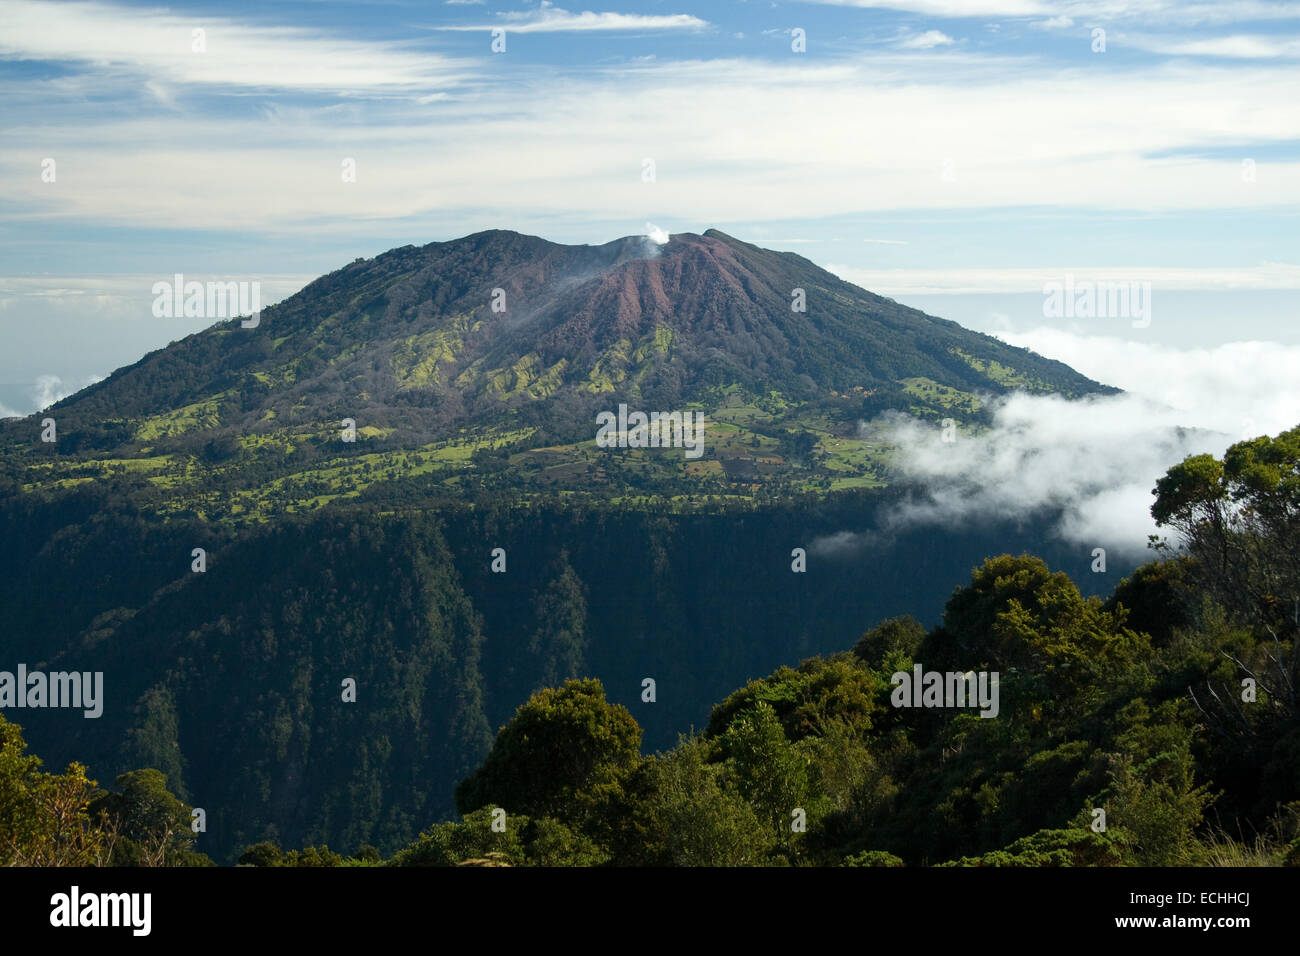 Malerische Aussicht auf den Vulkan auf Island von Costa Rica mit Wolkengebilde Hintergrund. Stockfoto